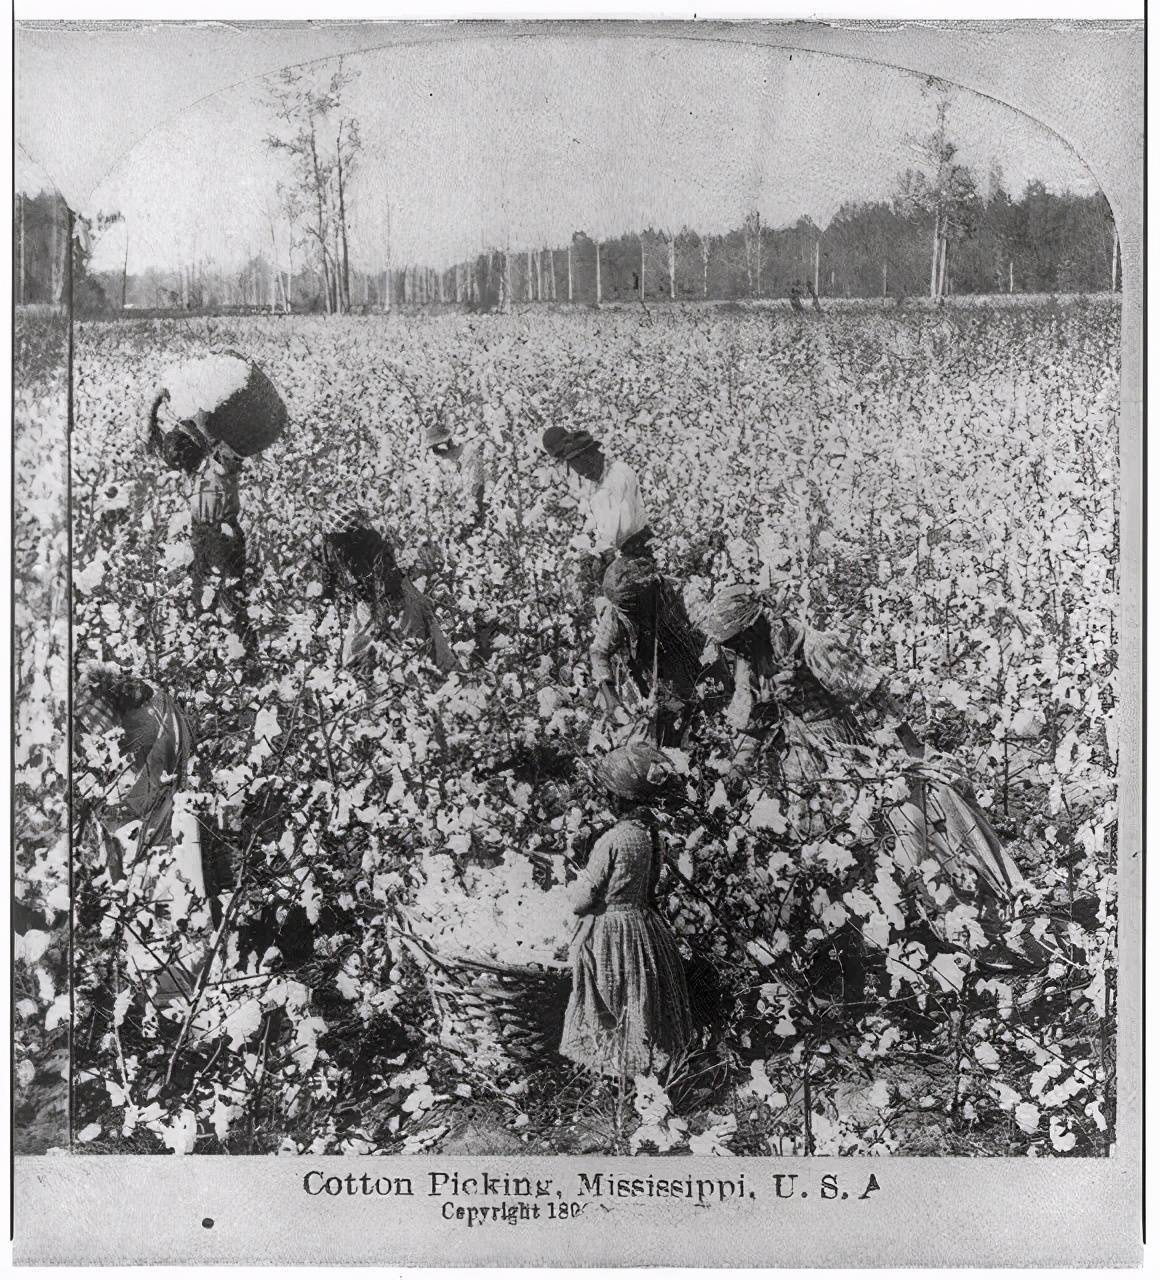 密西西比州棉花采摘.图源:美国国会图书馆